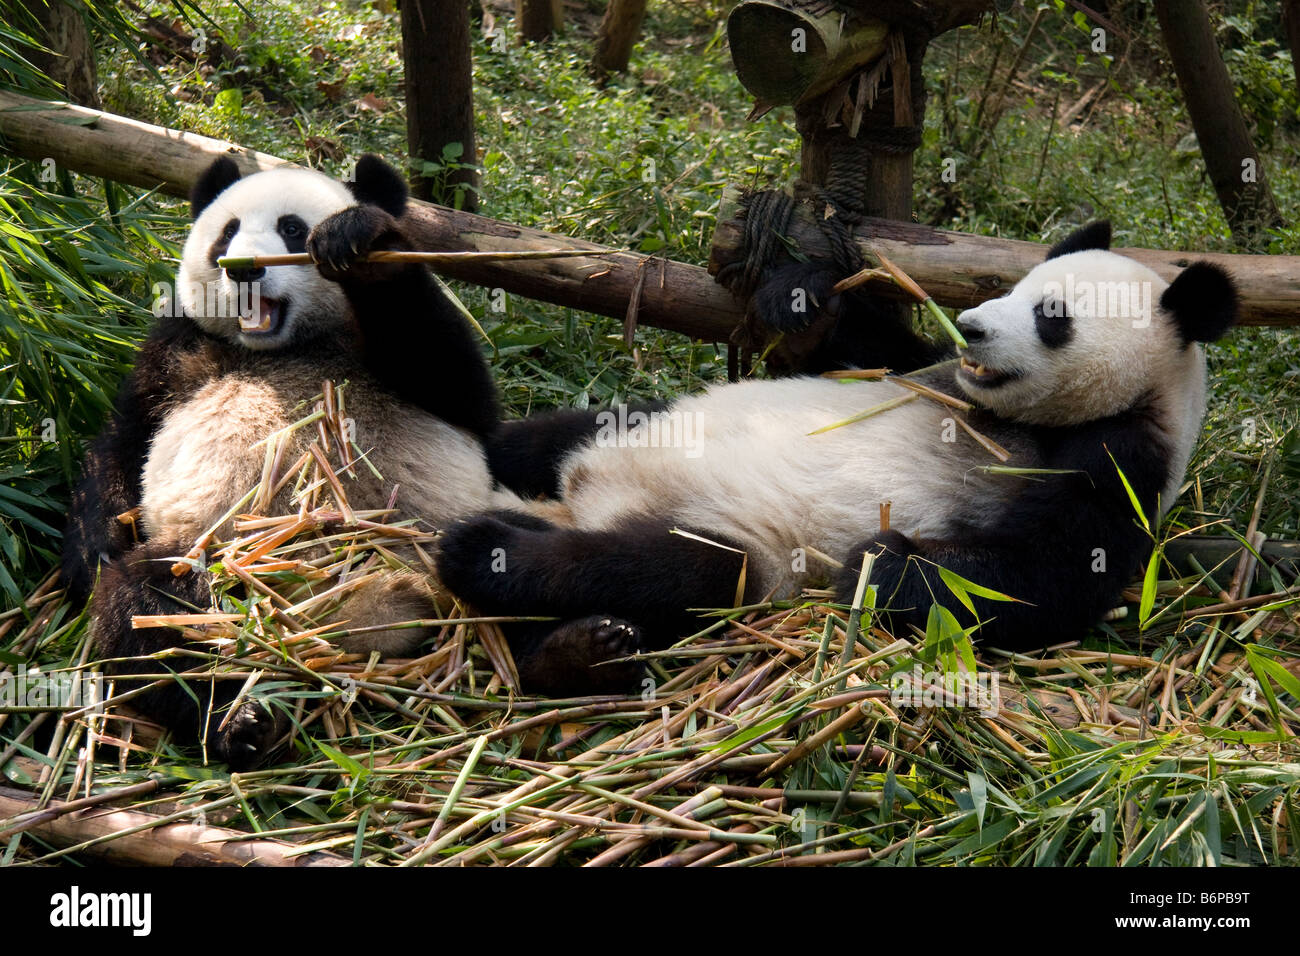 Due panda orsi mangiare all'interno di bamboo Chengdu Panda del centro di allevamento Foto Stock